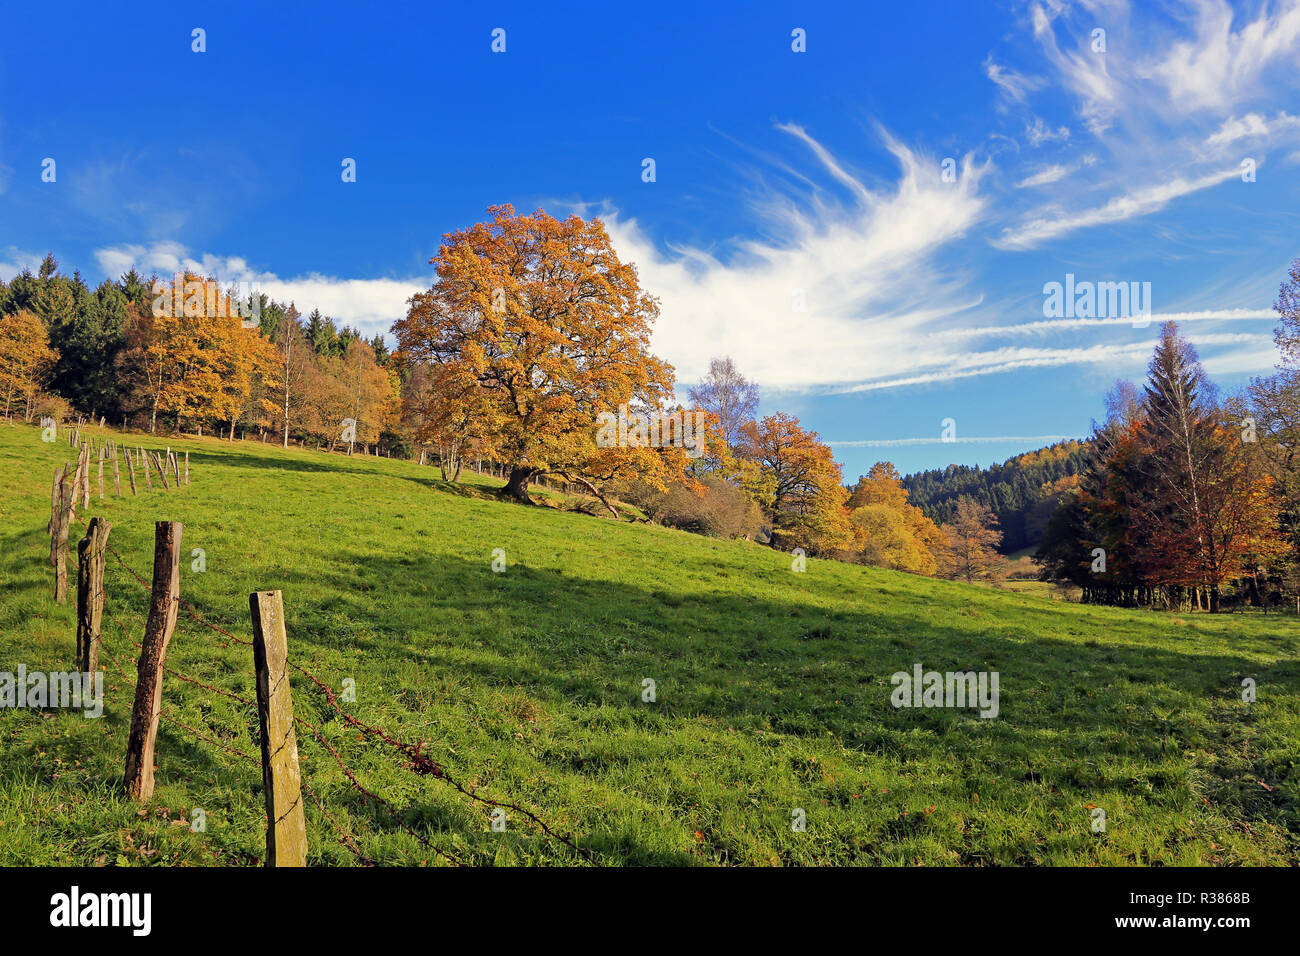 an autumn day in hochsauerland Stock Photo